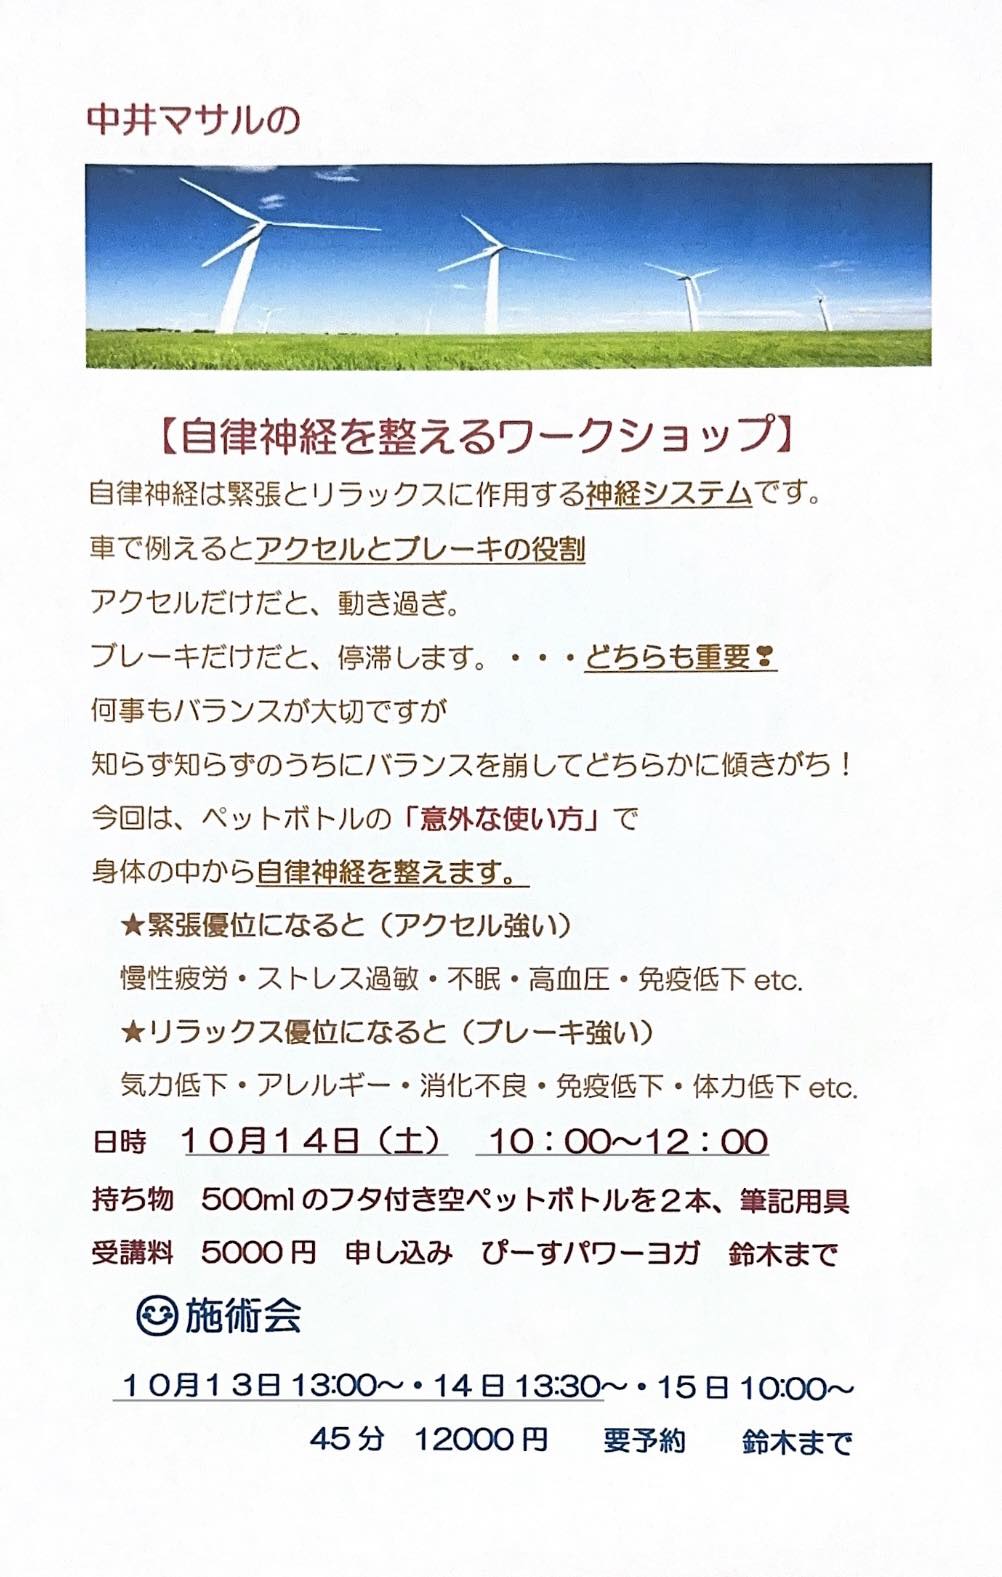 中井マサルのZero-G Touch 整体DVD8枚 手技治療技術+bonfanti.com.br